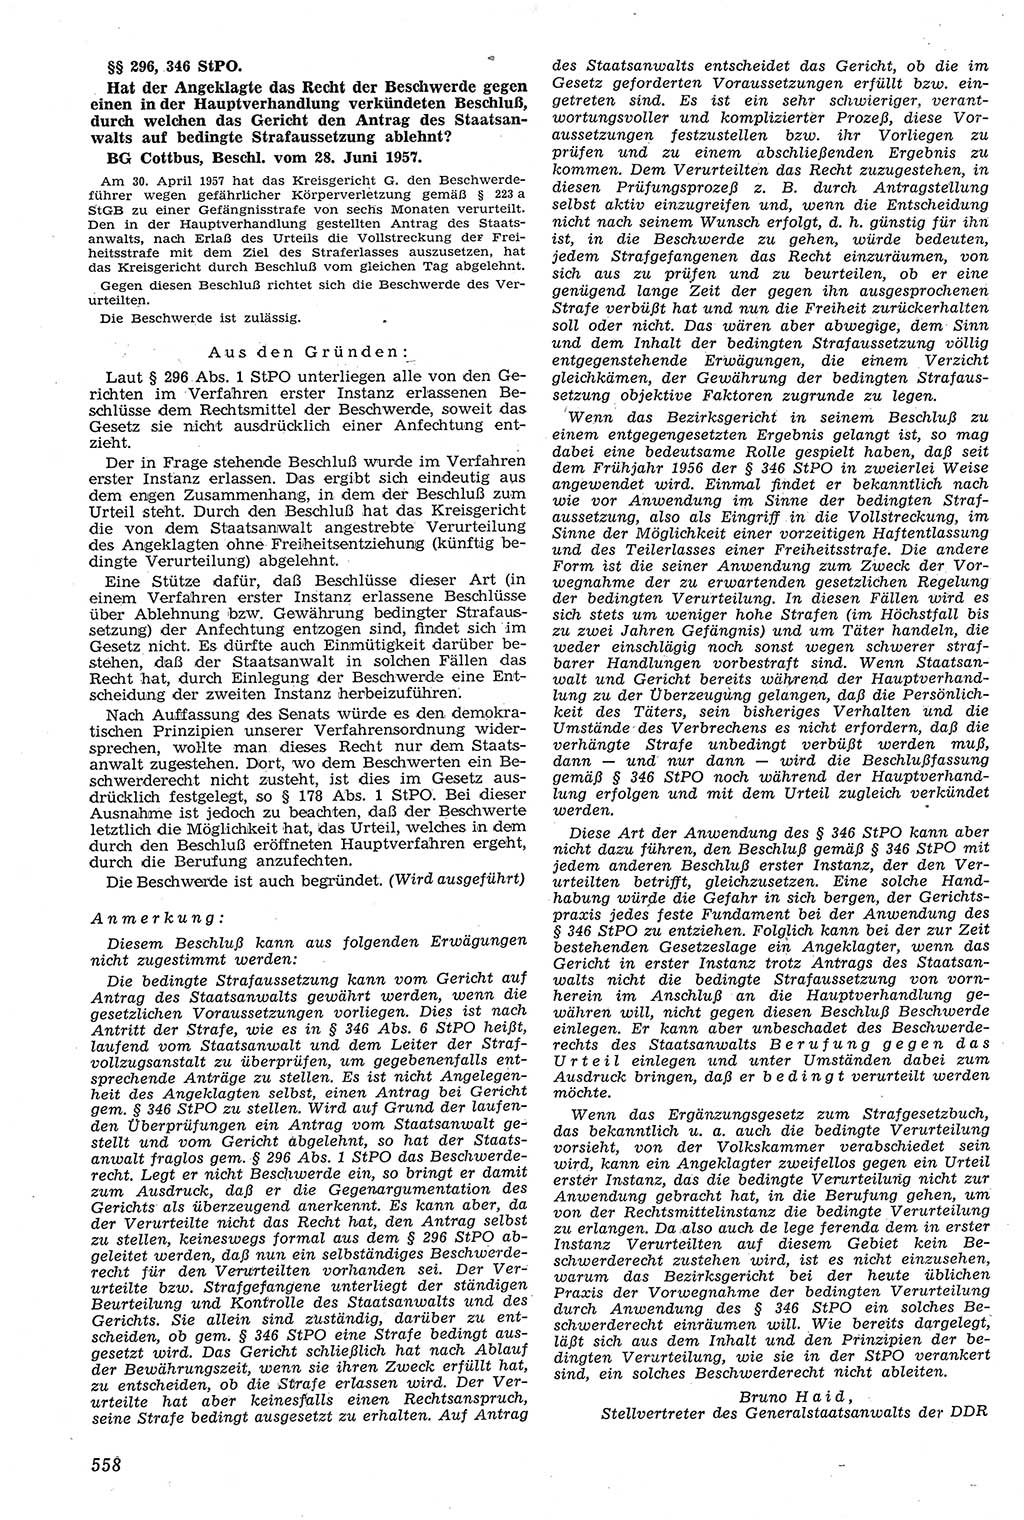 Neue Justiz (NJ), Zeitschrift für Recht und Rechtswissenschaft [Deutsche Demokratische Republik (DDR)], 11. Jahrgang 1957, Seite 558 (NJ DDR 1957, S. 558)